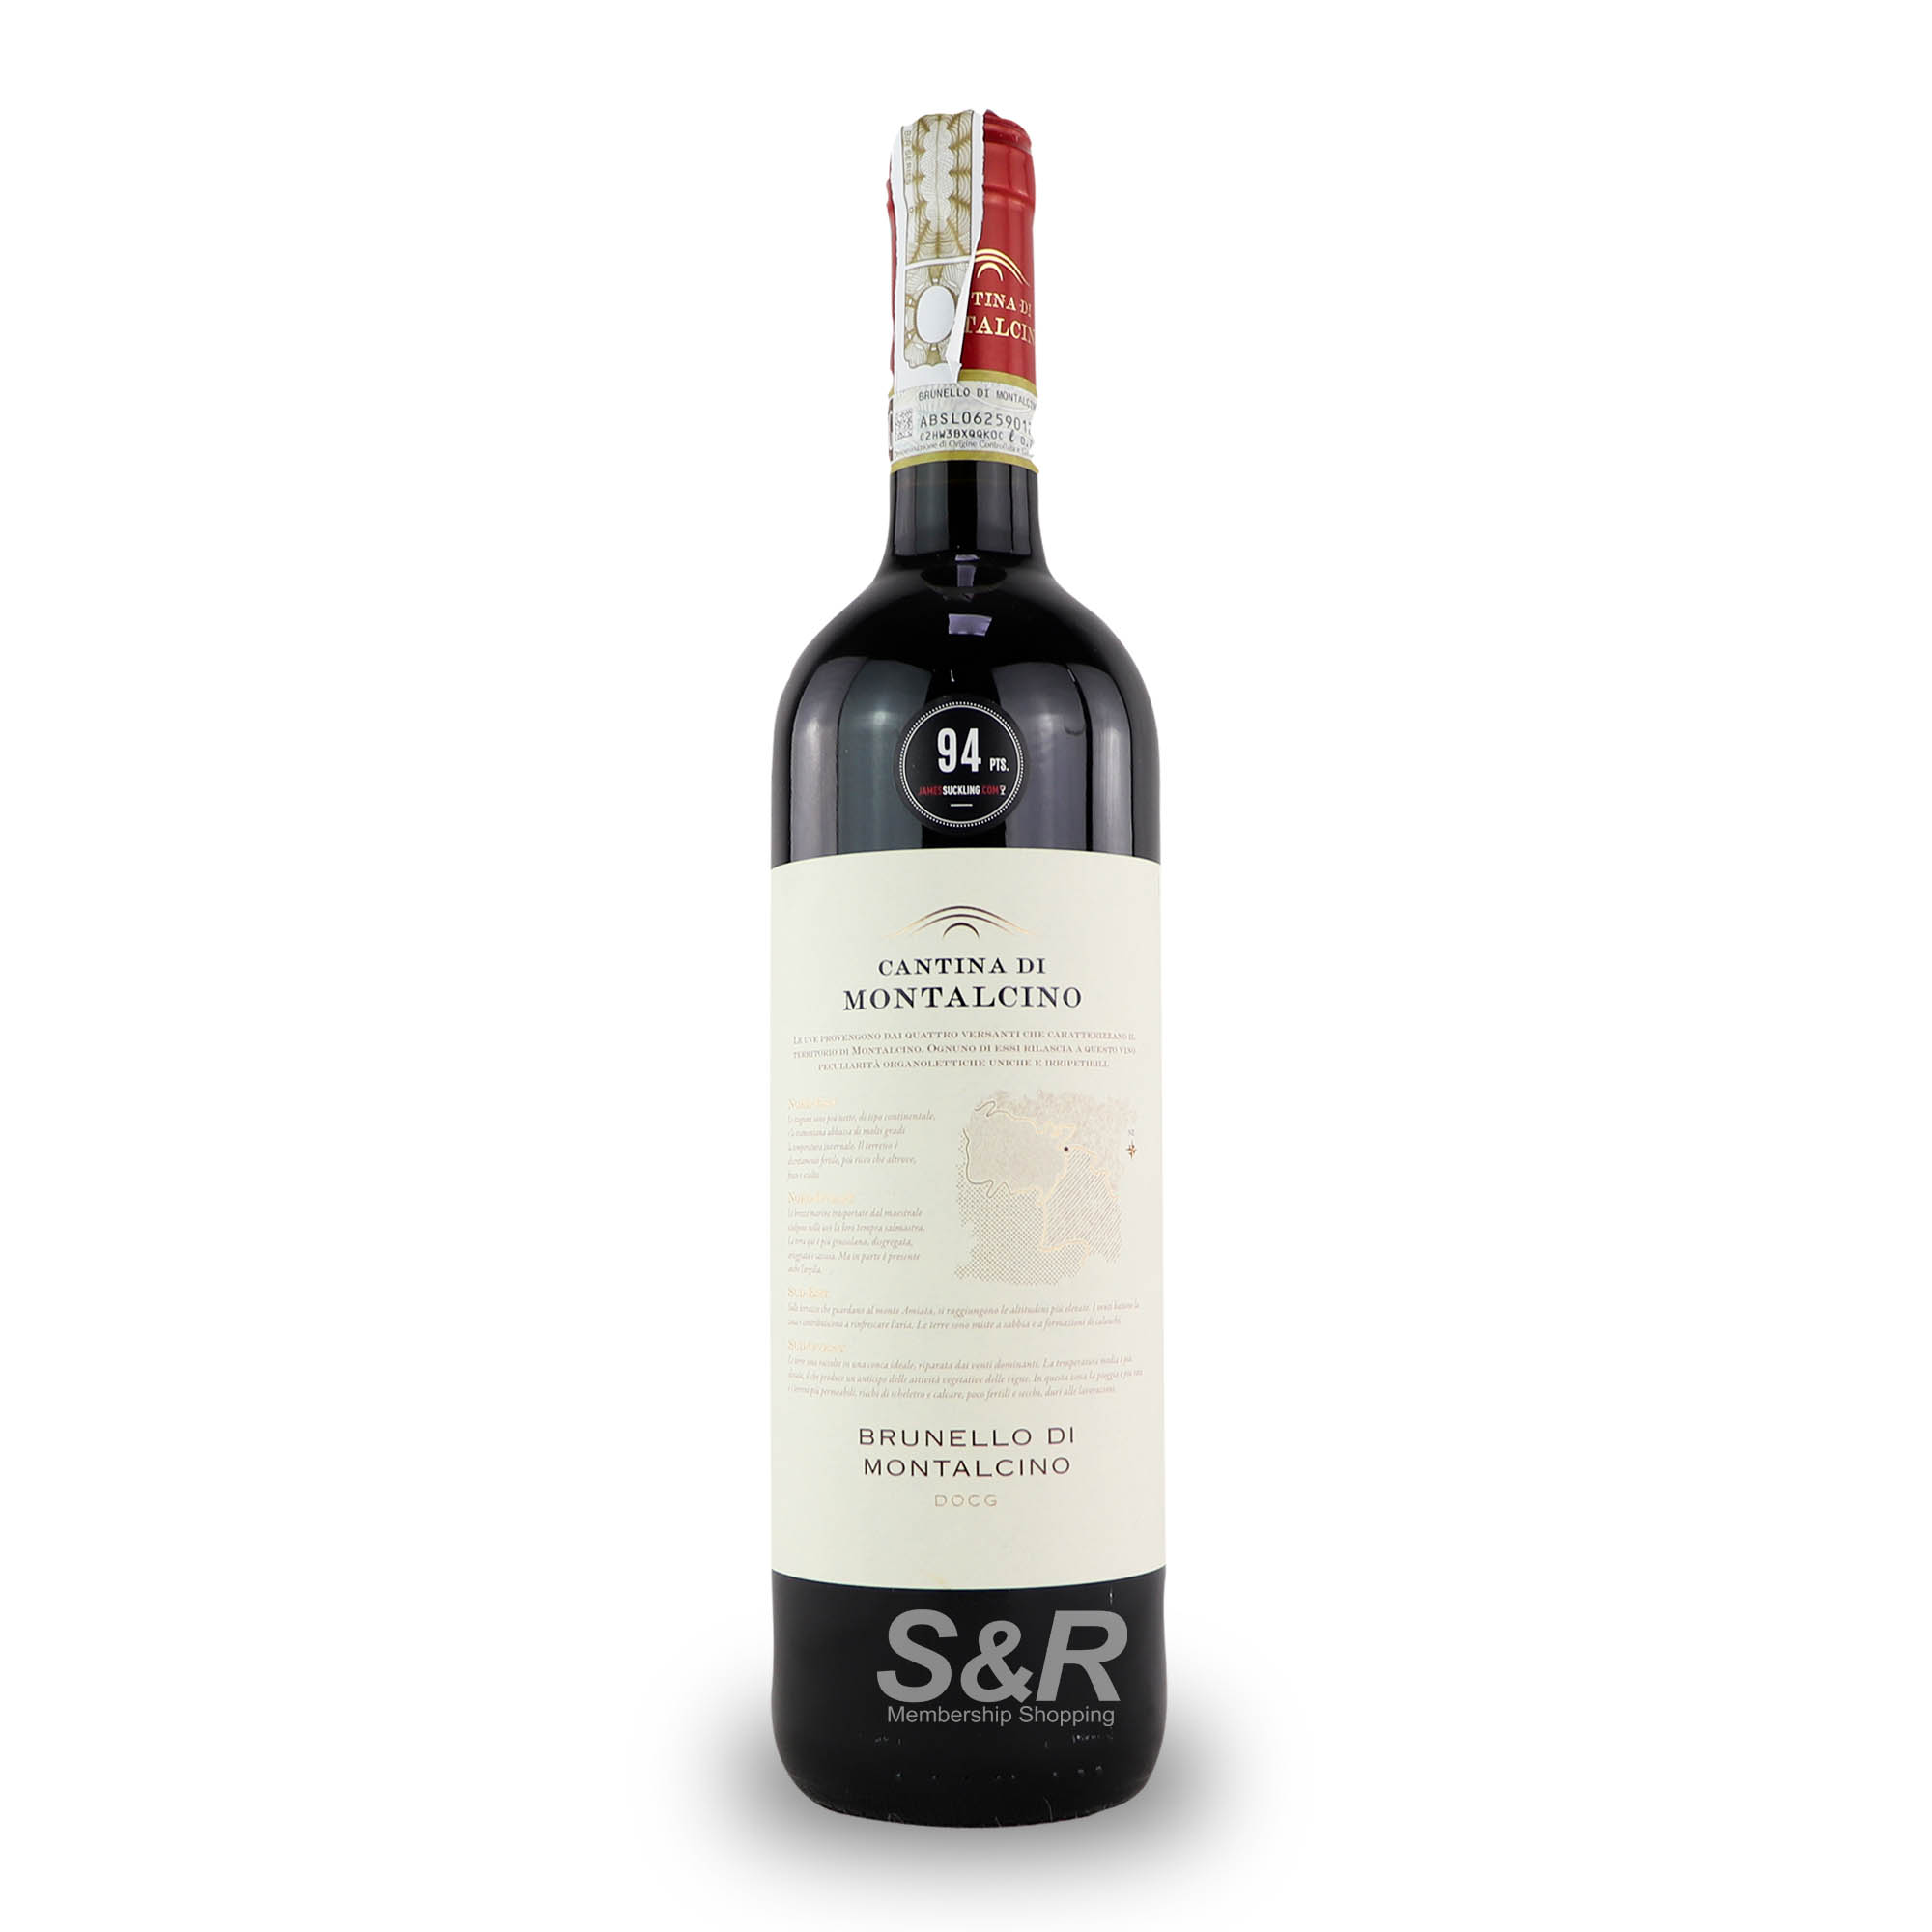 Cantina di Montalcino Brunello di Montalcino D.O.C.G. Wine 750mL